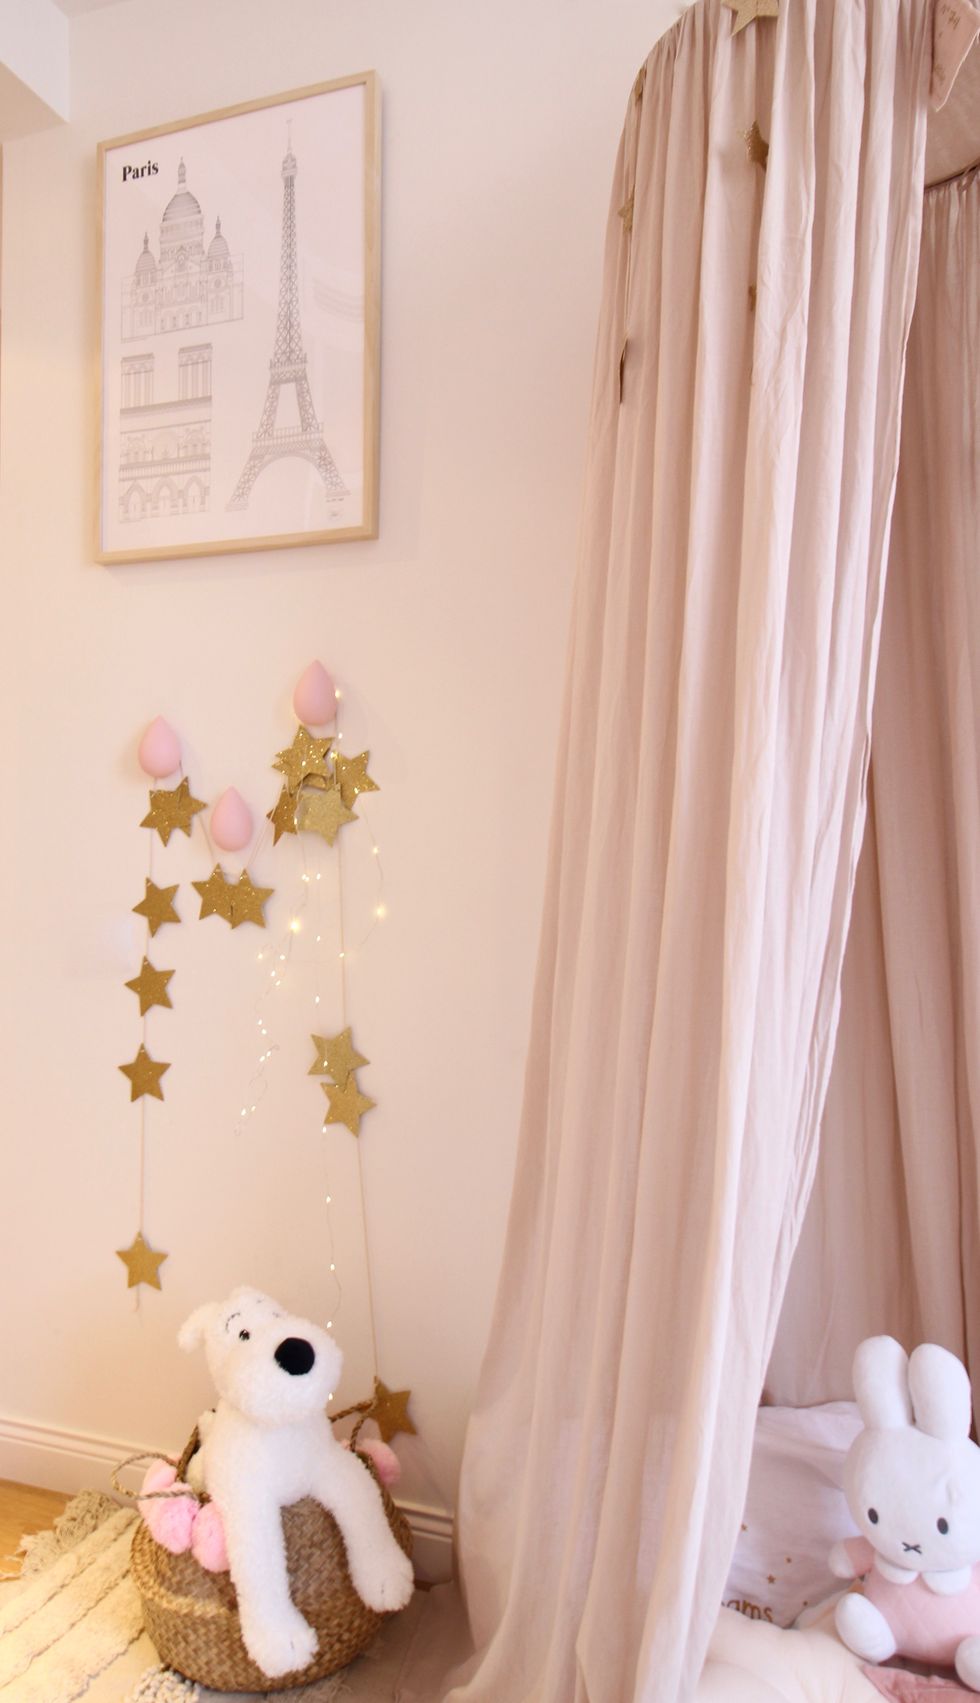 Detalle decorativo del cuarto del bebé